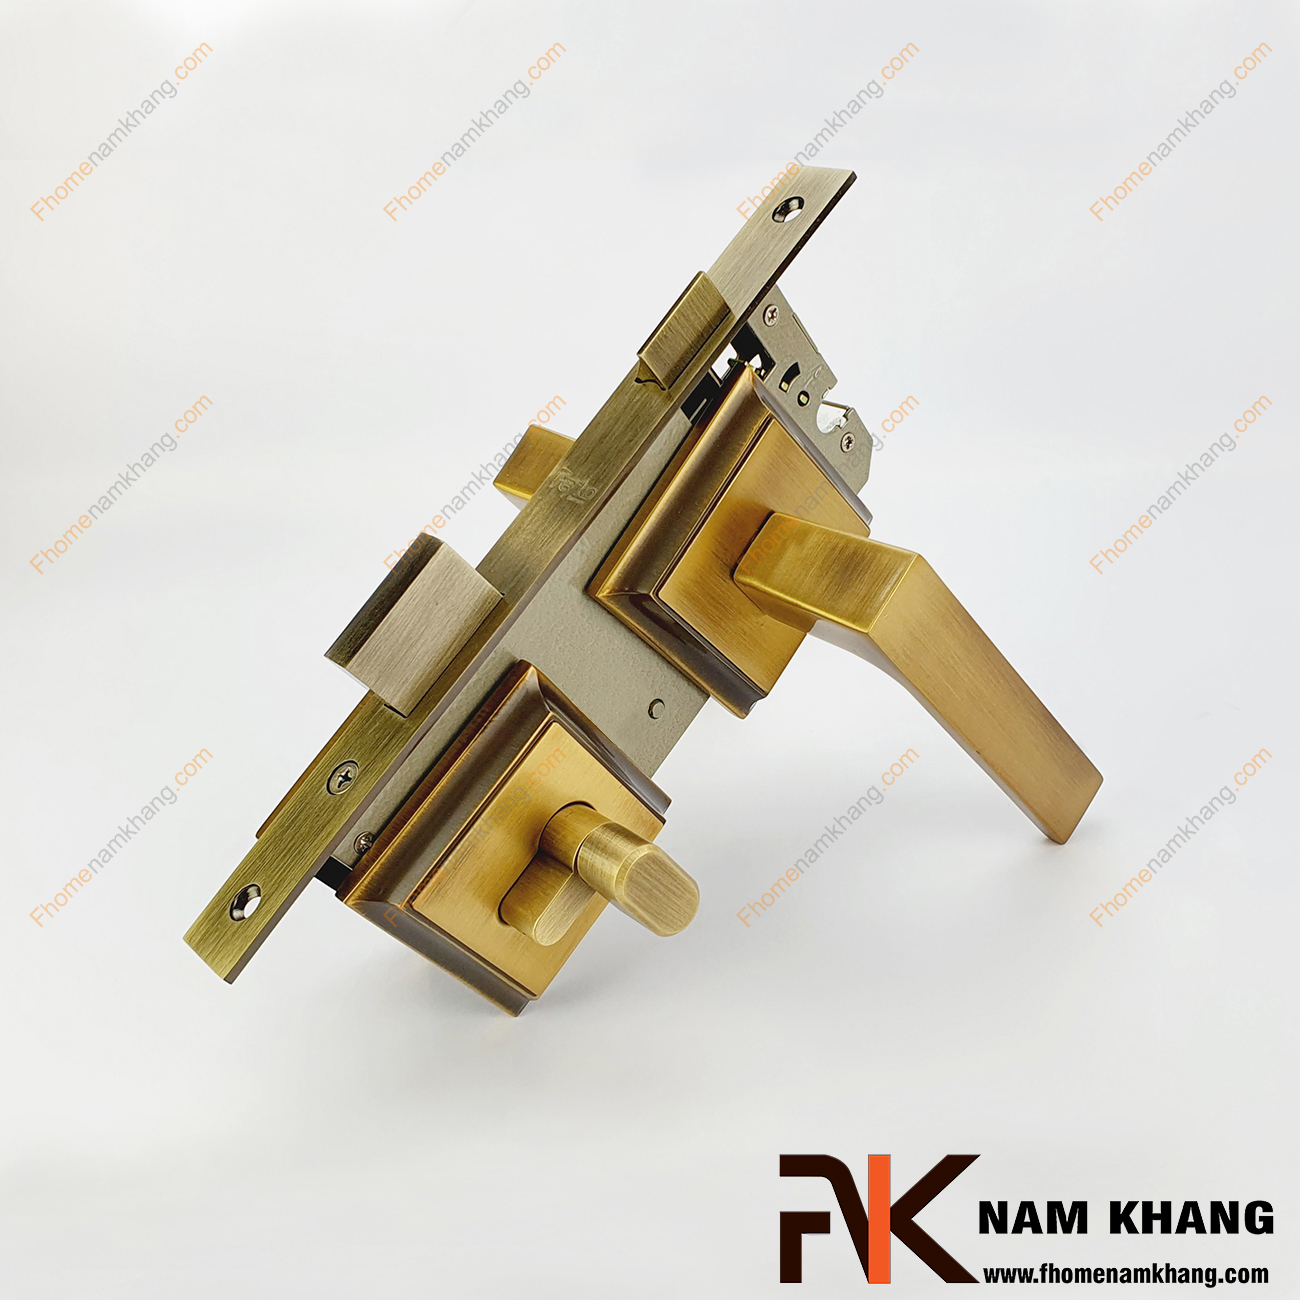 Khóa cửa phân thể bằng đồng cao cấp màu đồng vàng NK555-RX có thiết kế dạng ốp vuông, bo tròn các góc cạnh tạo nên sự tinh tế và cao cấp.